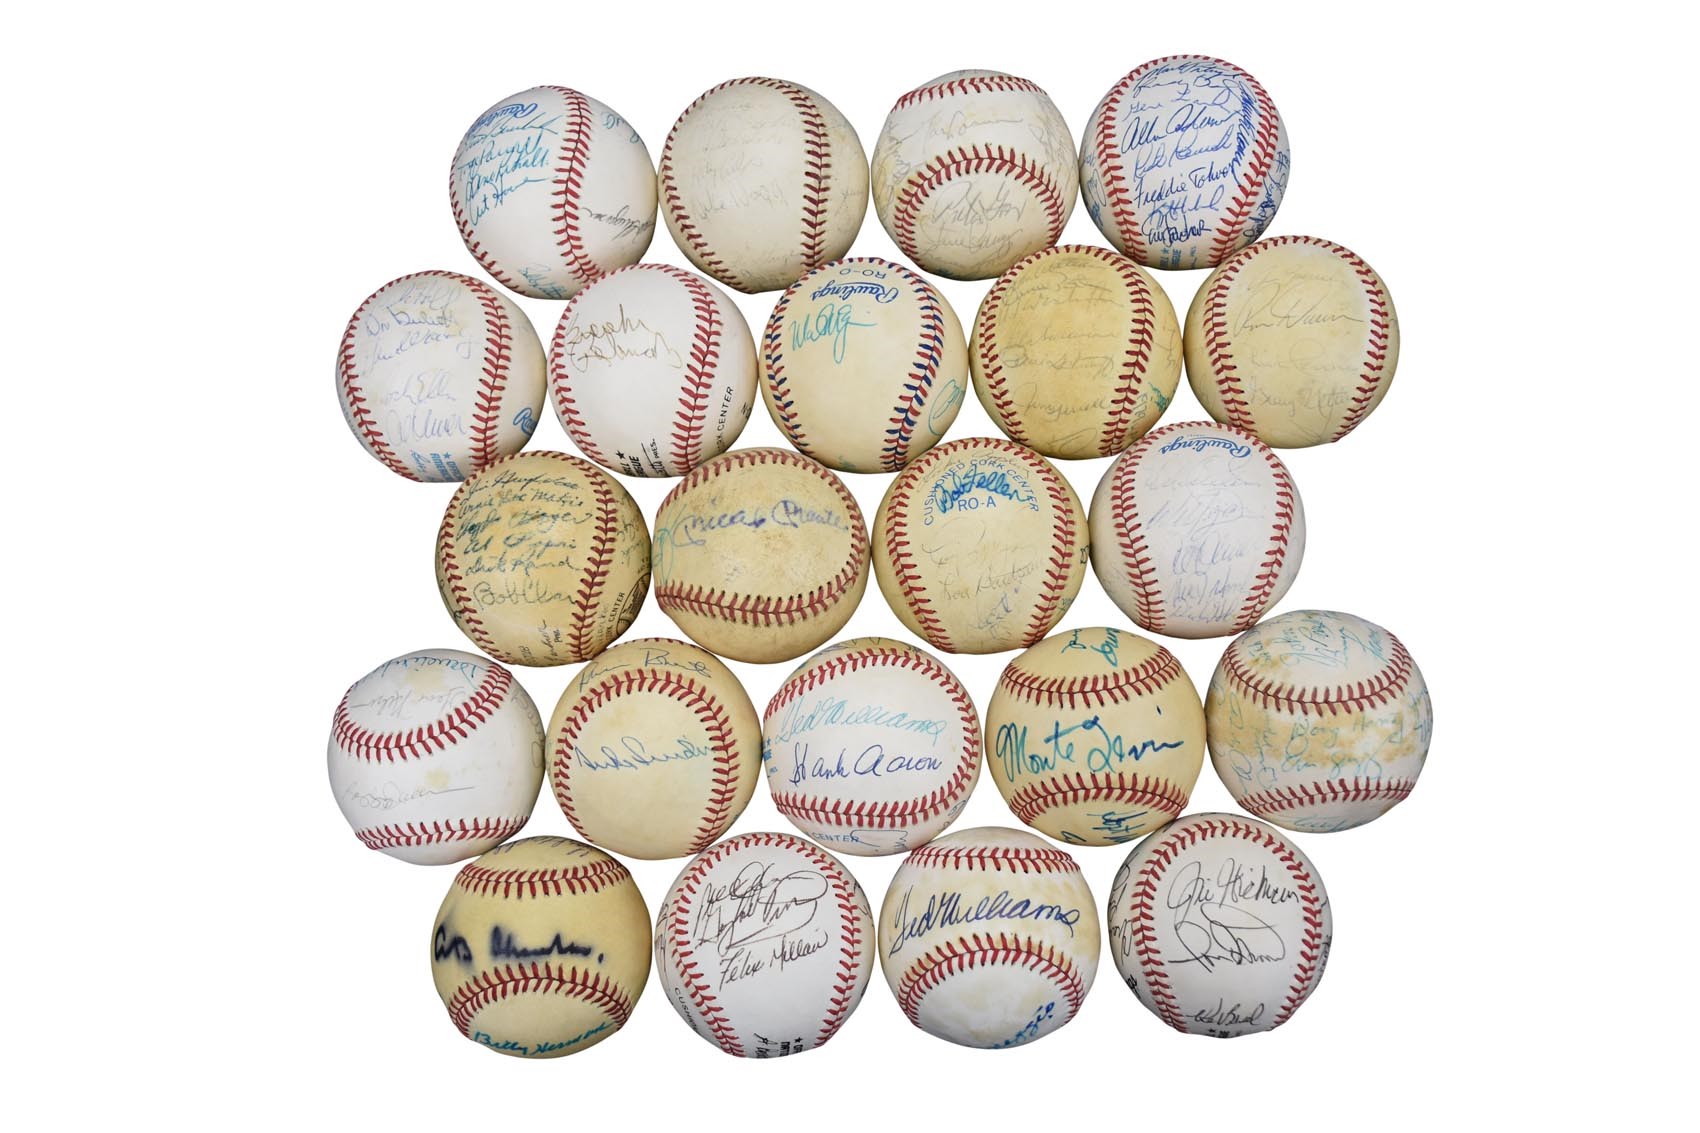 Hall of Fame, Old Timers, Team & Multi-Signed Baseballs (35+)